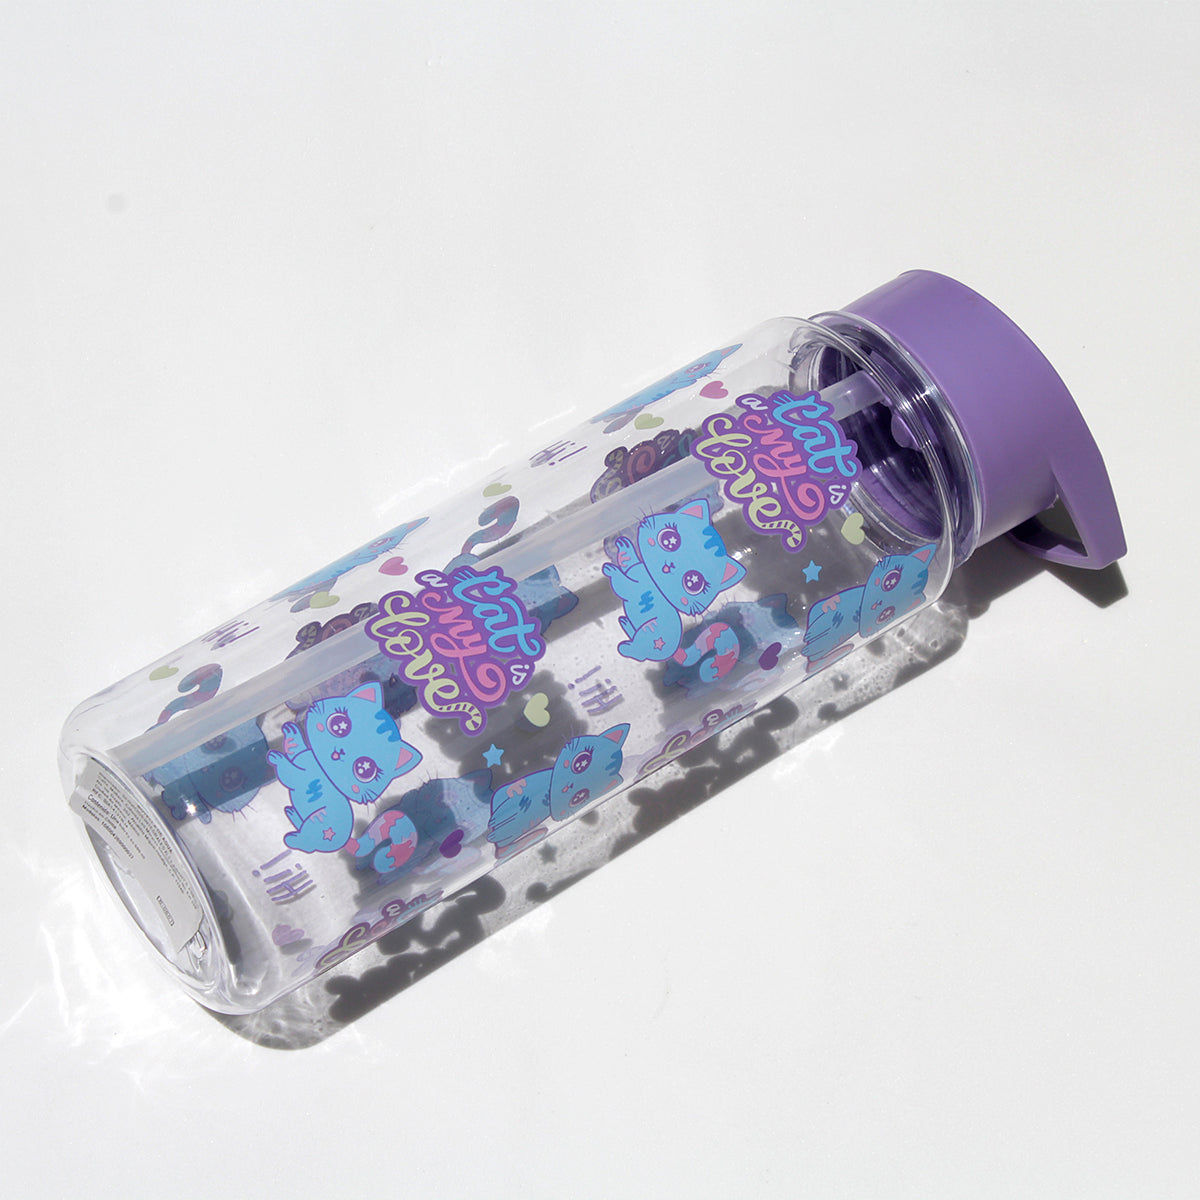 Botella Para Agua de 680ml Color Rosa Diseño Unicornio Infantil Peschelle  Unicornio Rosa